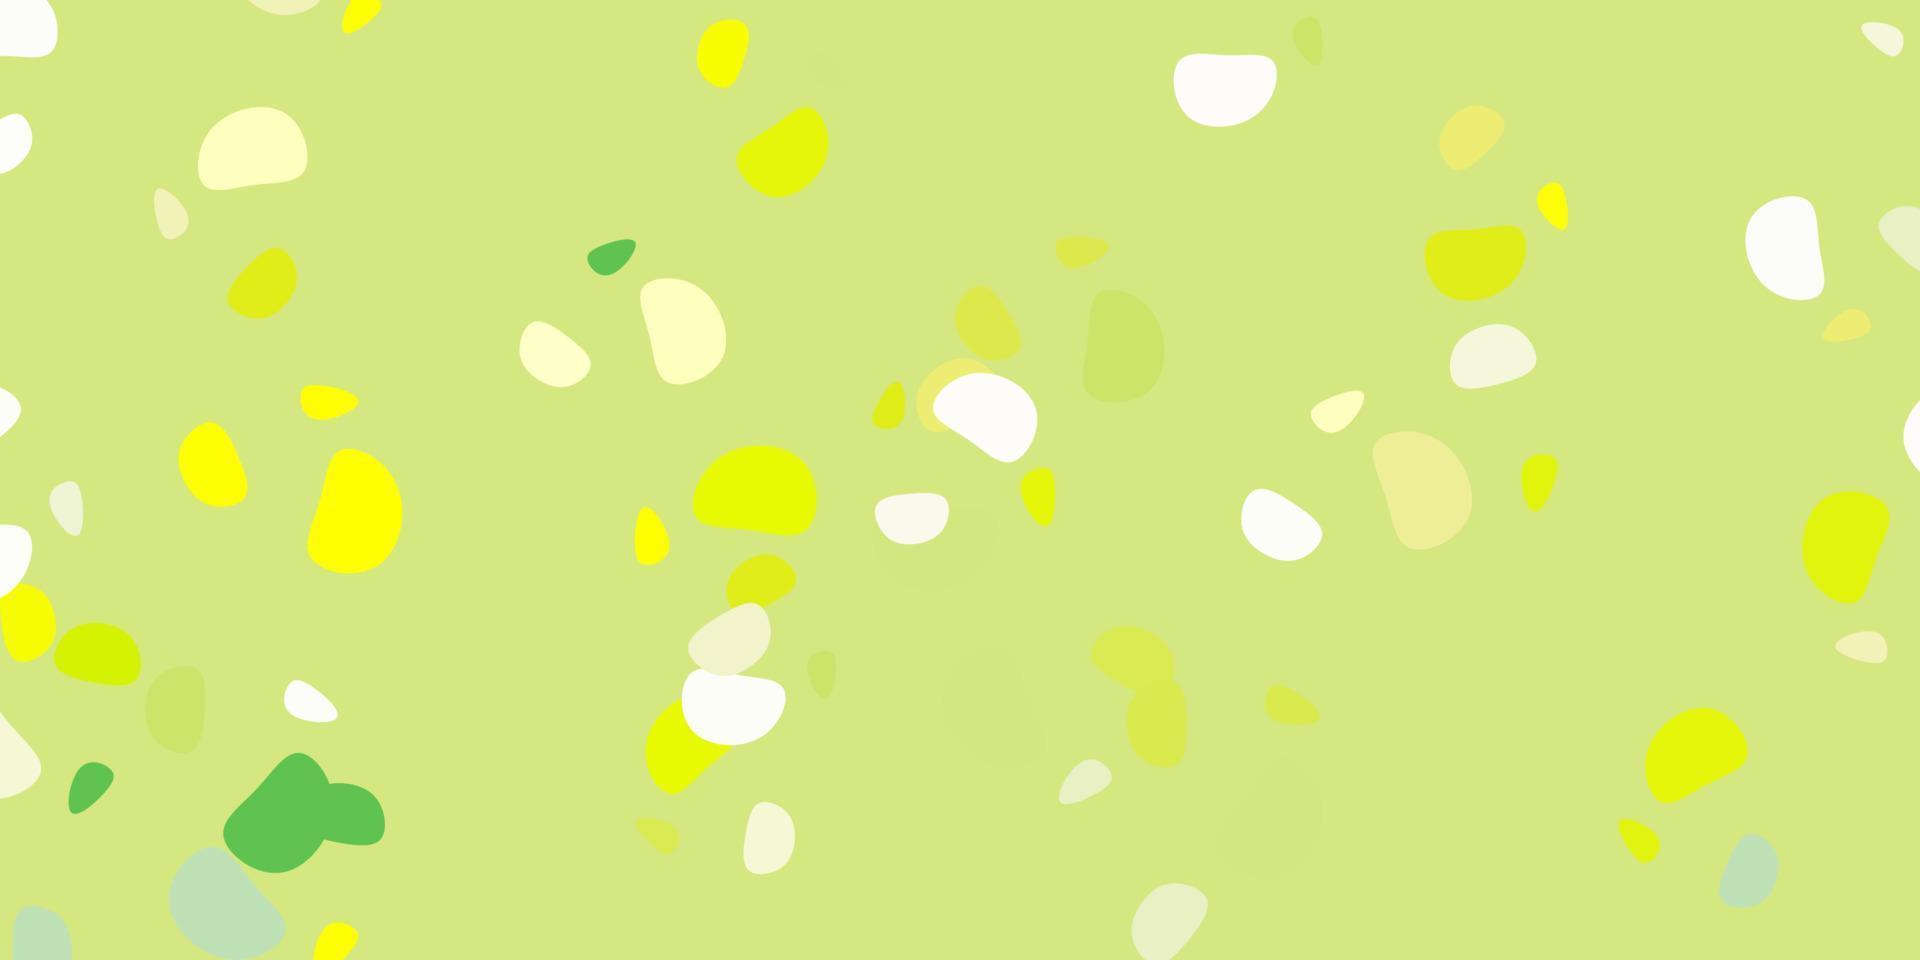 sfondo vettoriale verde chiaro, giallo con forme casuali.